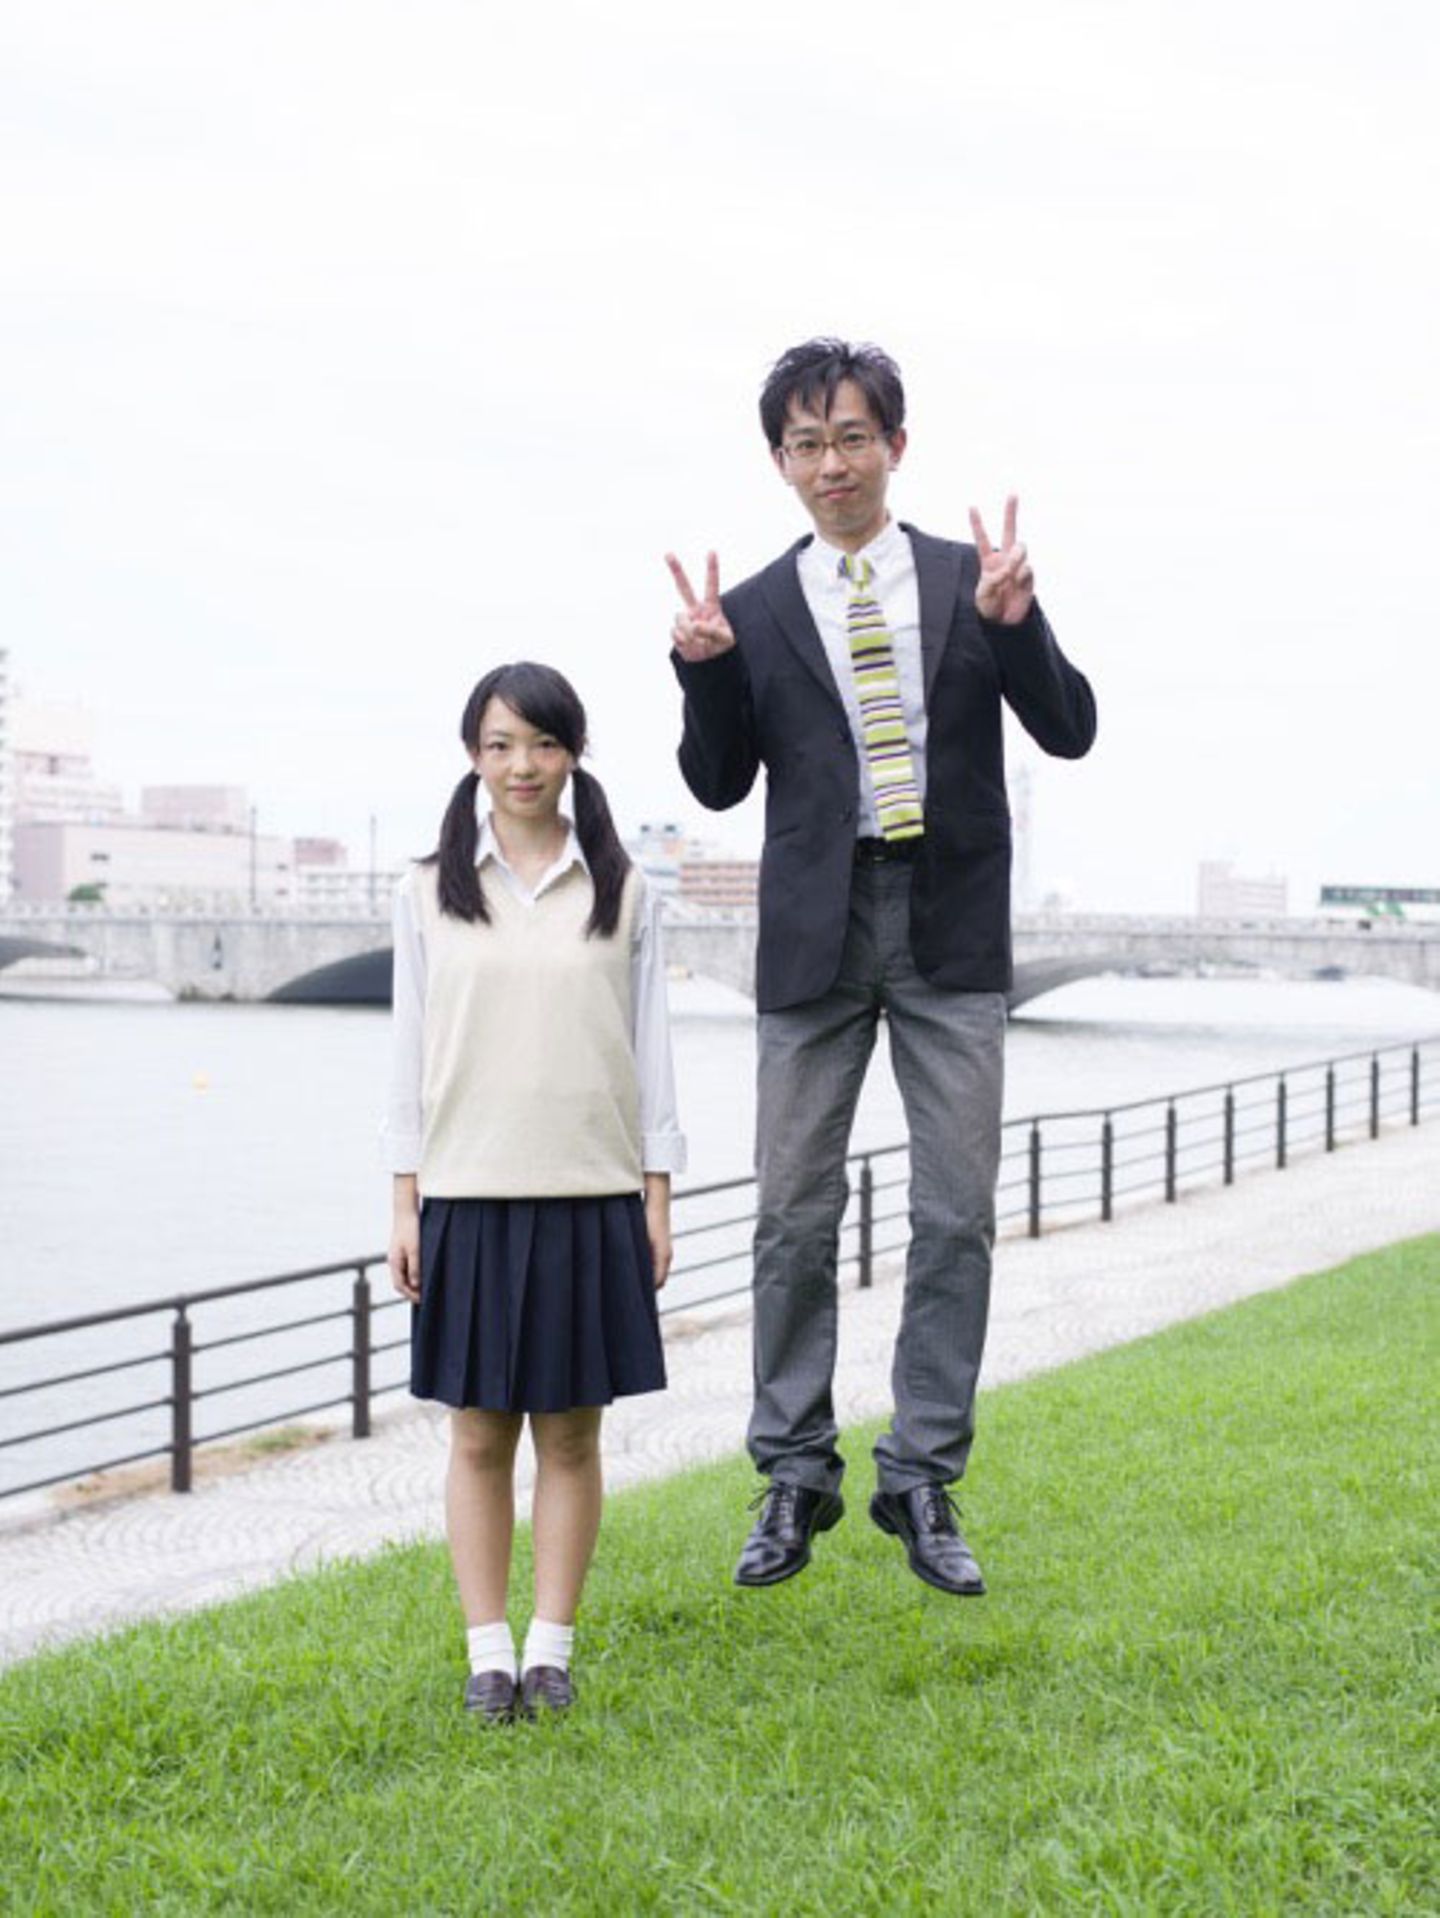 Noch mehr springende Väter gibt es auch in Yuki Aoyamas Bildband "Daughters and Salarymen" zu sehen, der gerade erschienen ist. Mehr Informationen gibt es auch auf der Website zur Fotoserie.